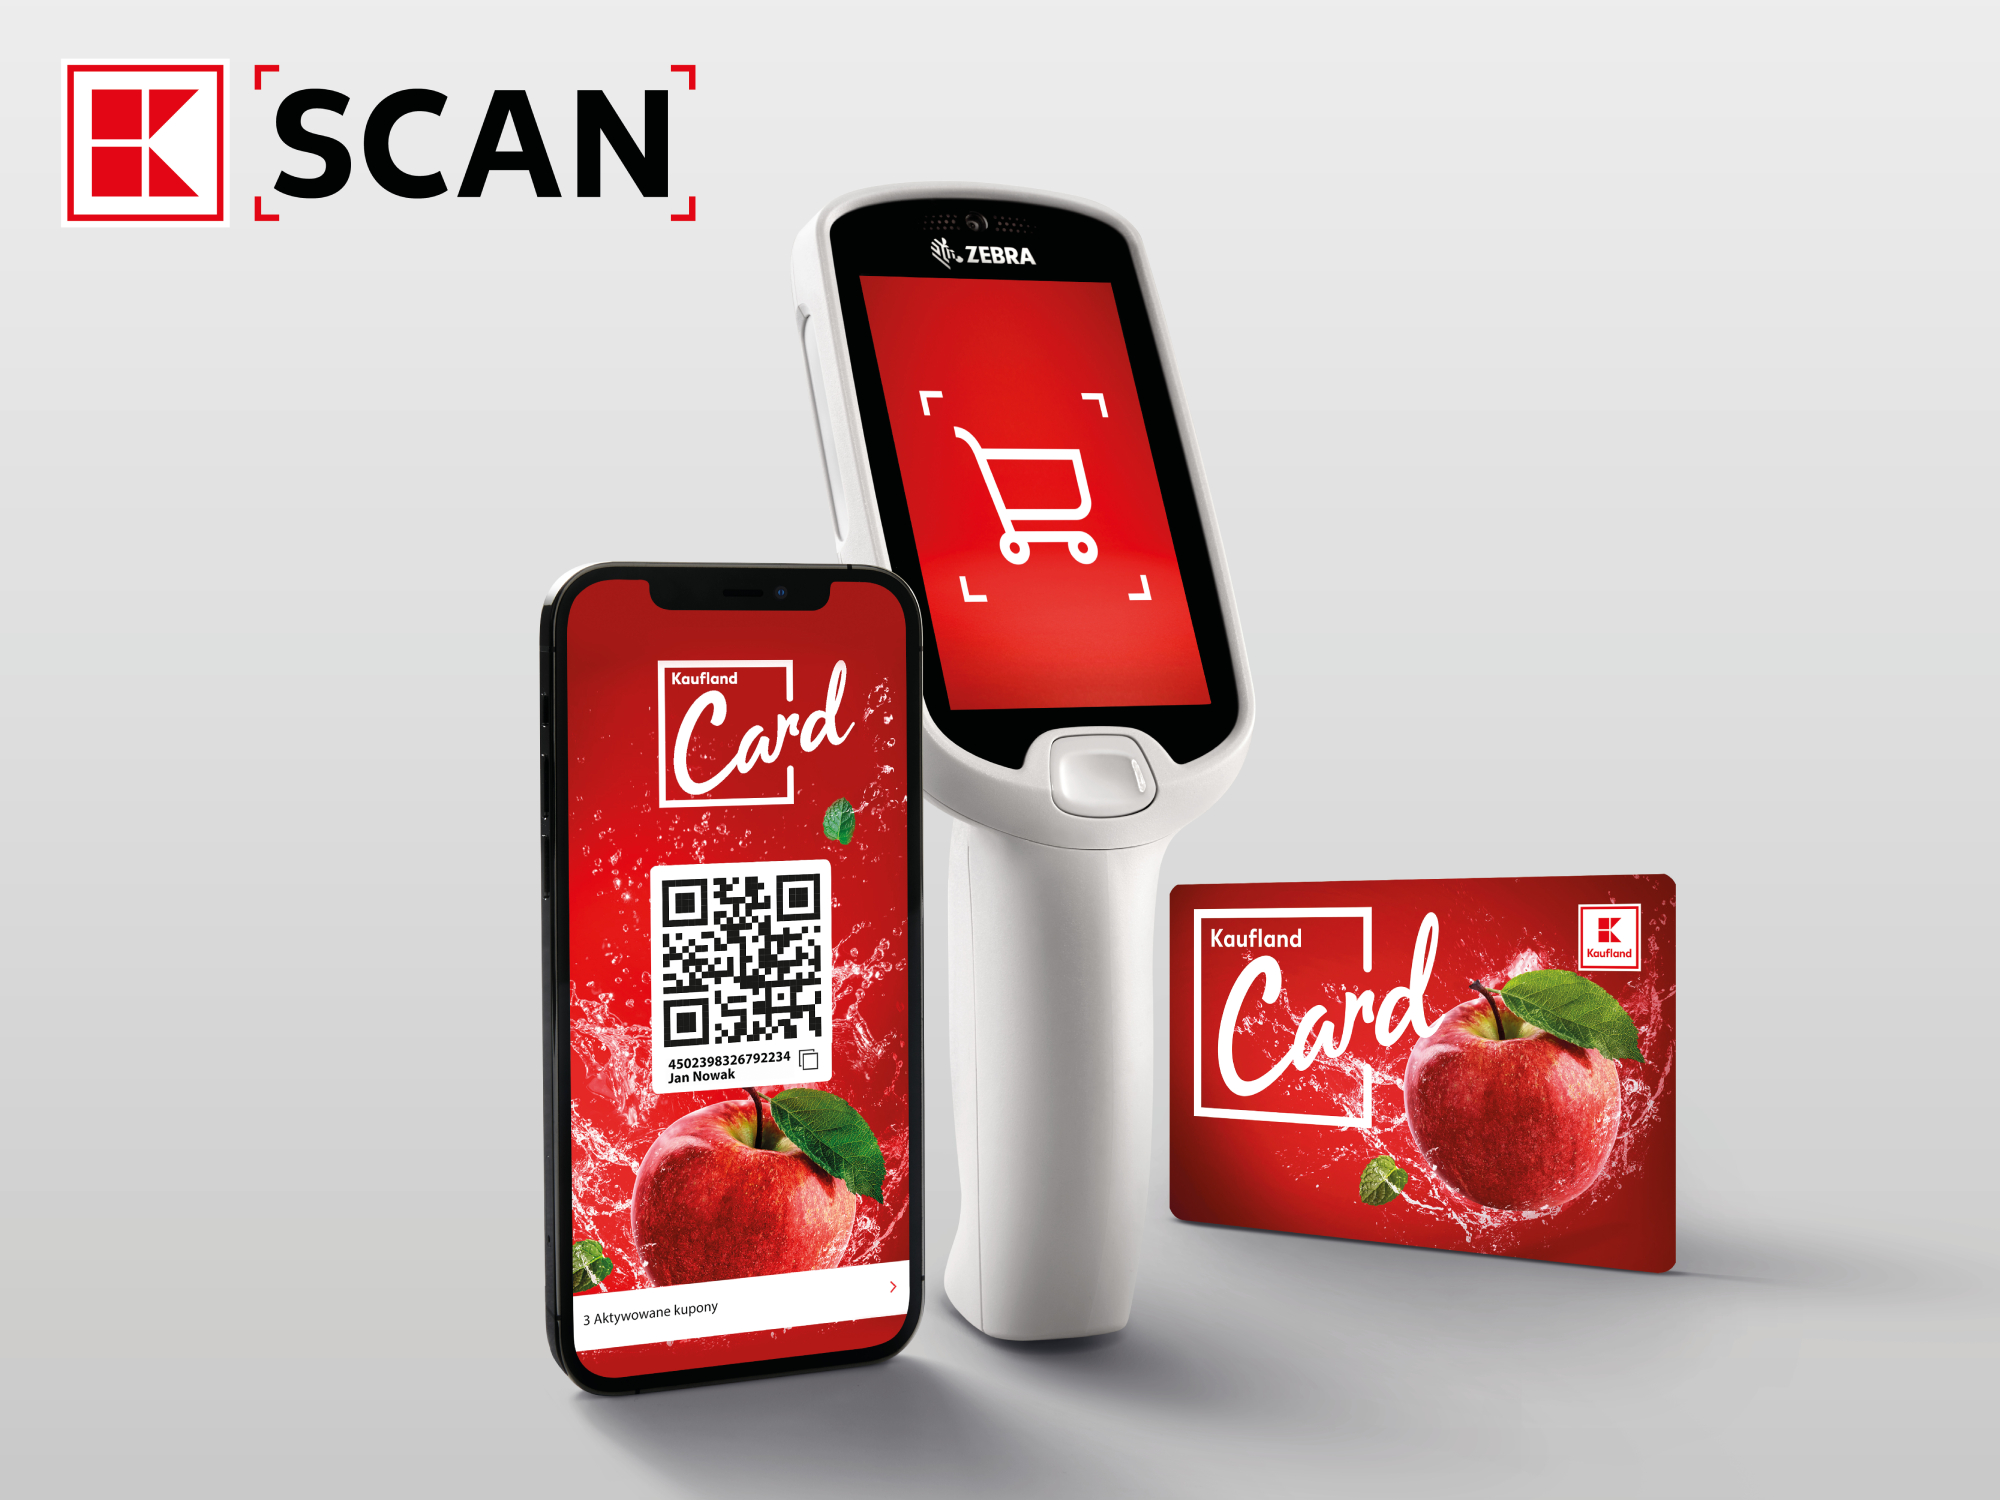 Kaufland rozwija usługę K-Scan – sieć wprowadza możliwość skanowania produktów za pomocą smartfonu